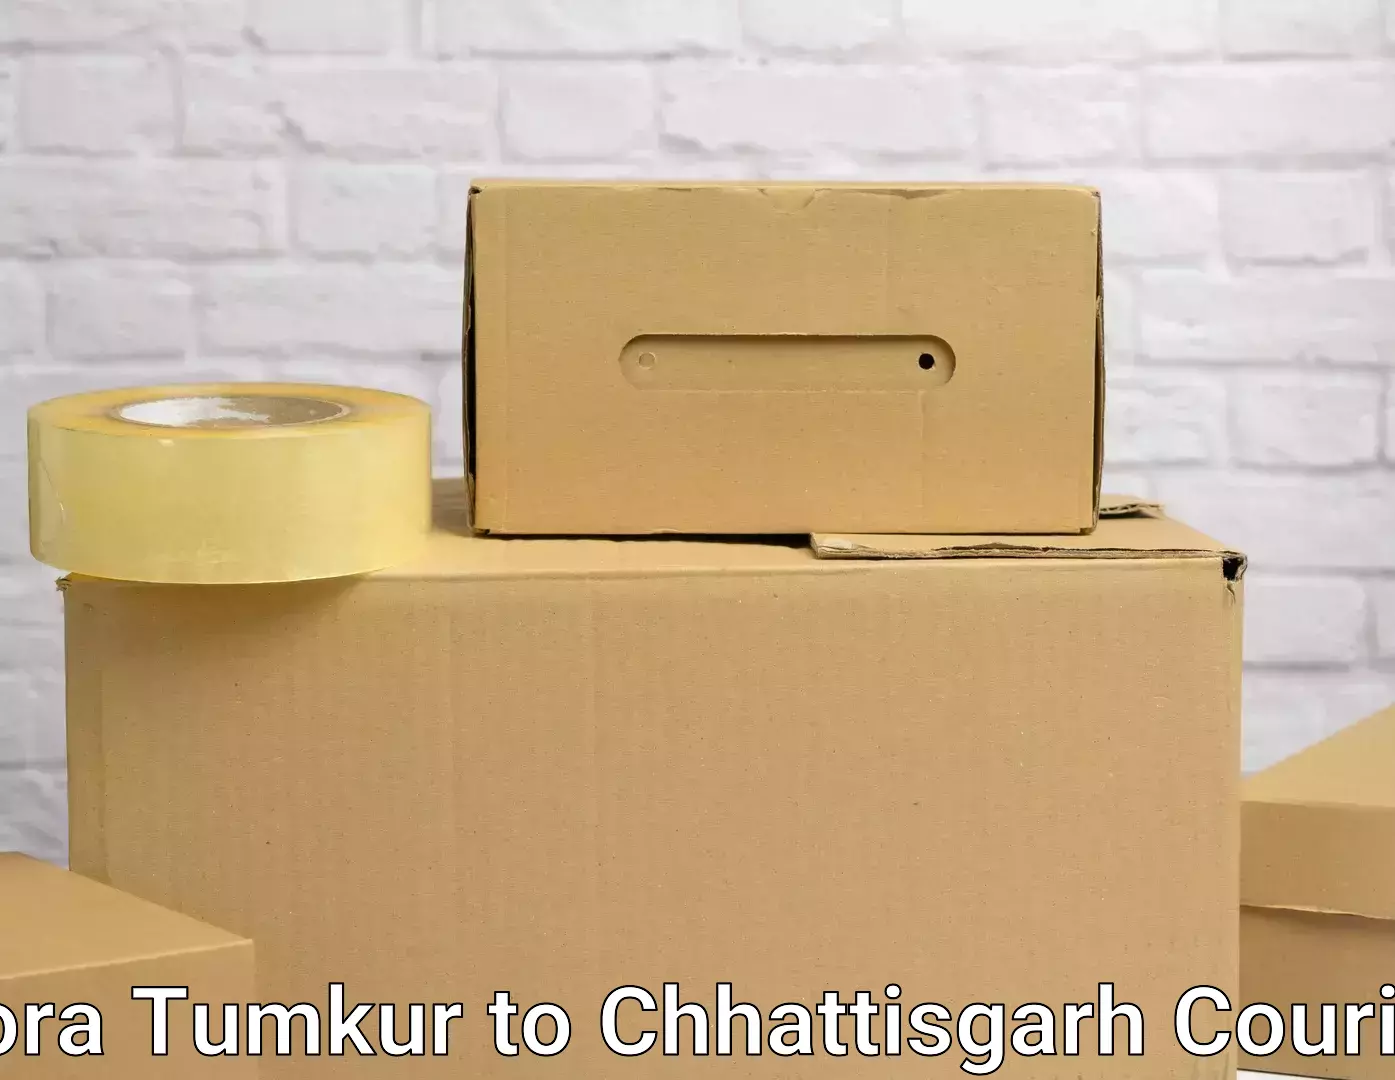 Furniture transport specialists Kora Tumkur to Raipur